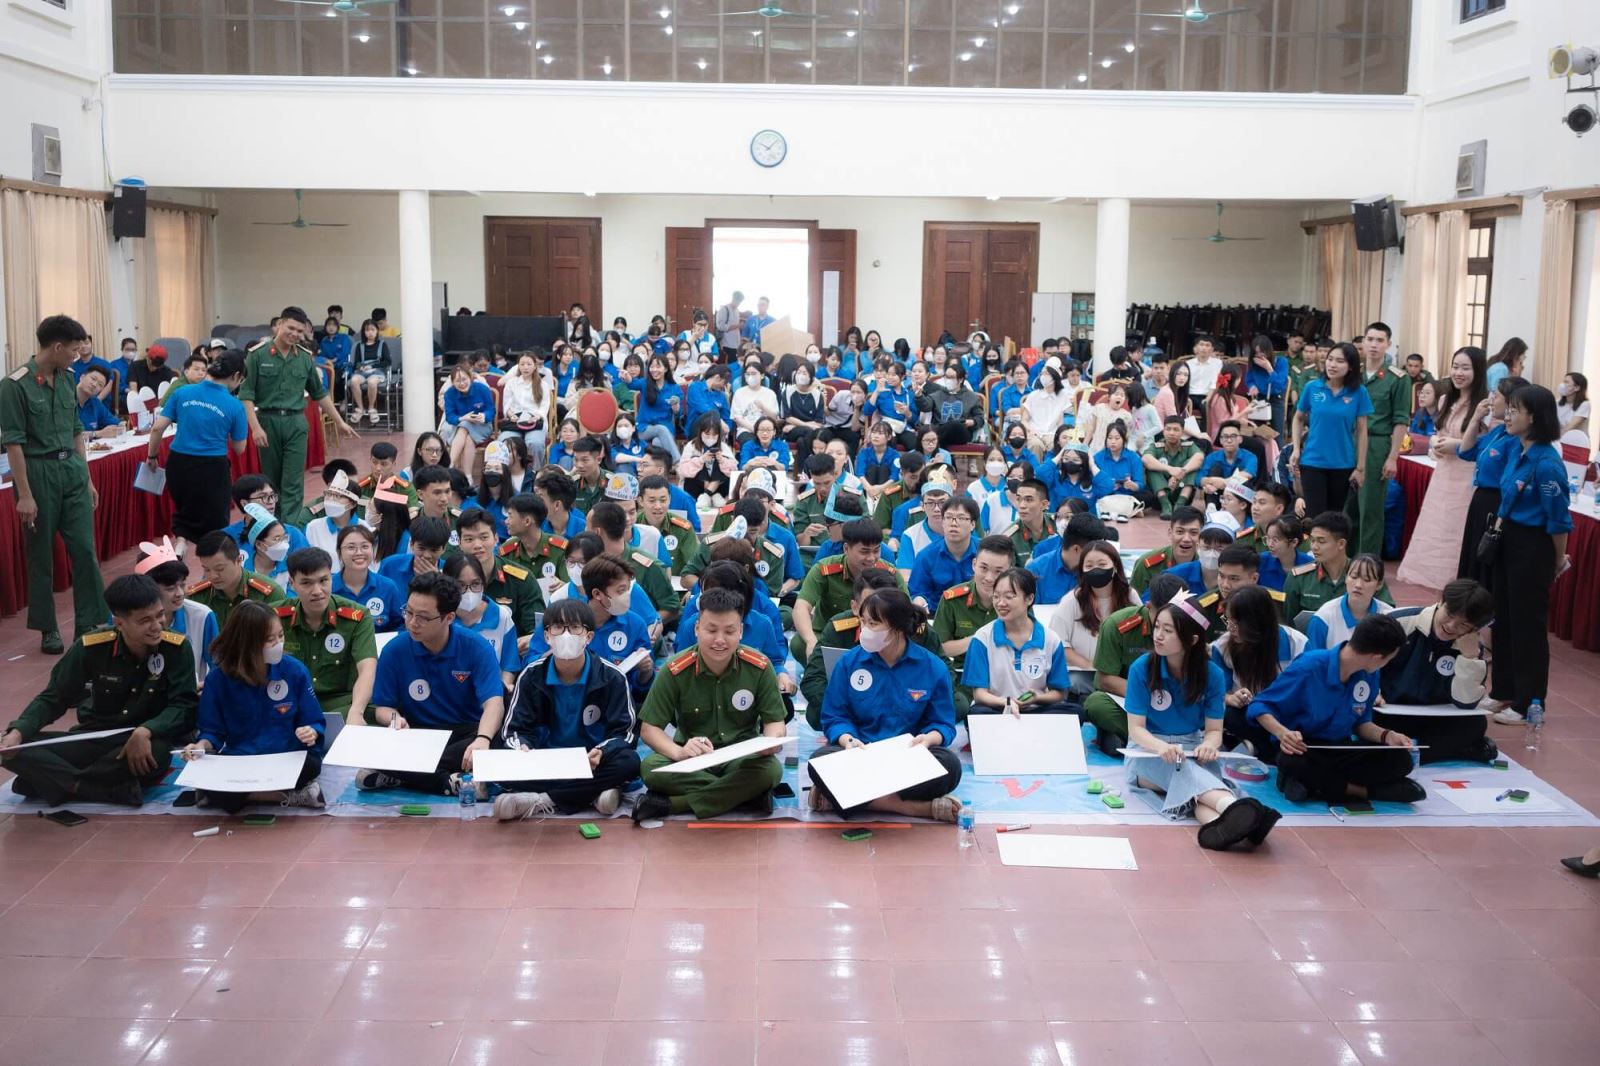 Tuổi trẻ Học viện Phụ nữ Việt Nam sáng tạo, năng động, gắn kết